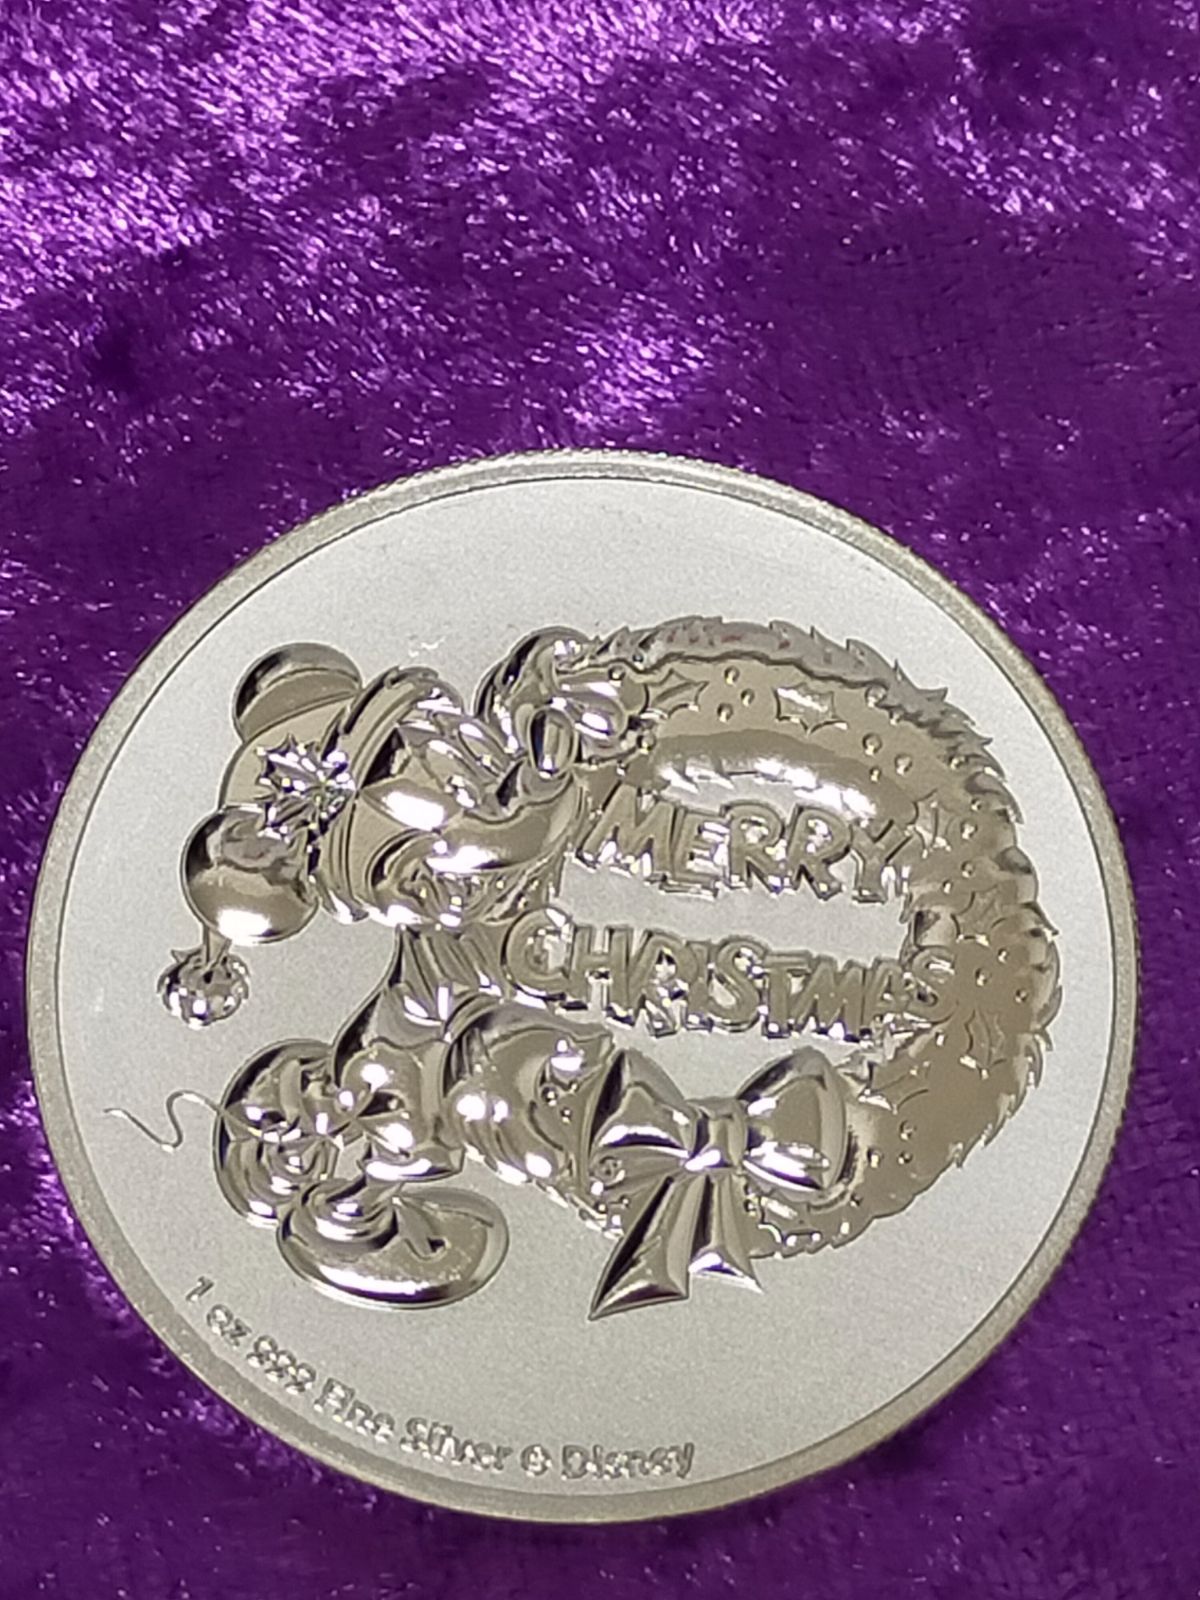 出色 2013年 ニウエ 銀貨 2ドル 金貨仕様 コイン 開運